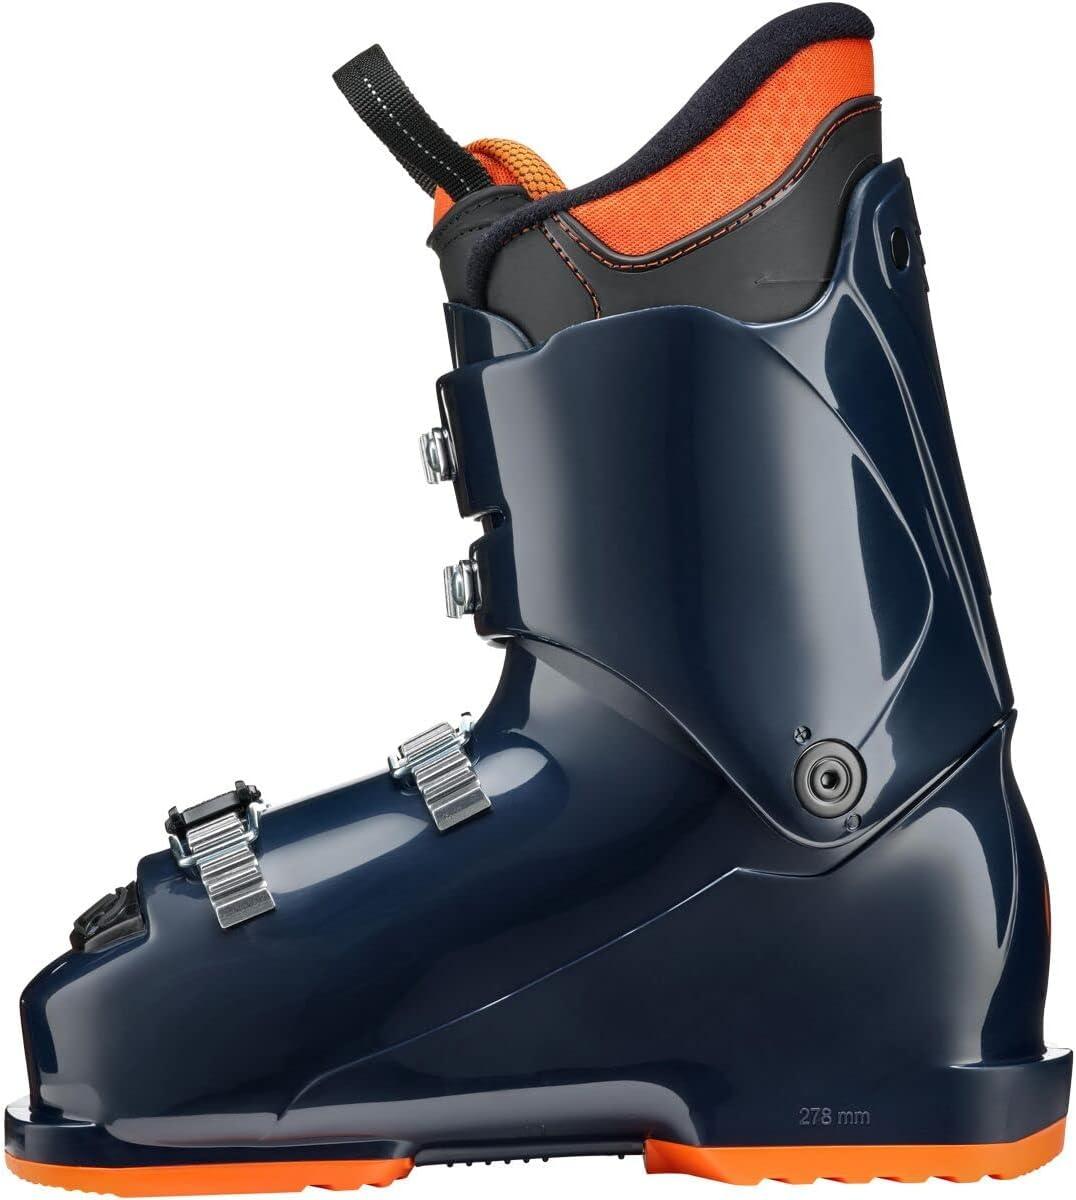 Blizzard Entertainment Tecnica Kids' JT 4 Ski Boots 2023 Ink Blue 22.5